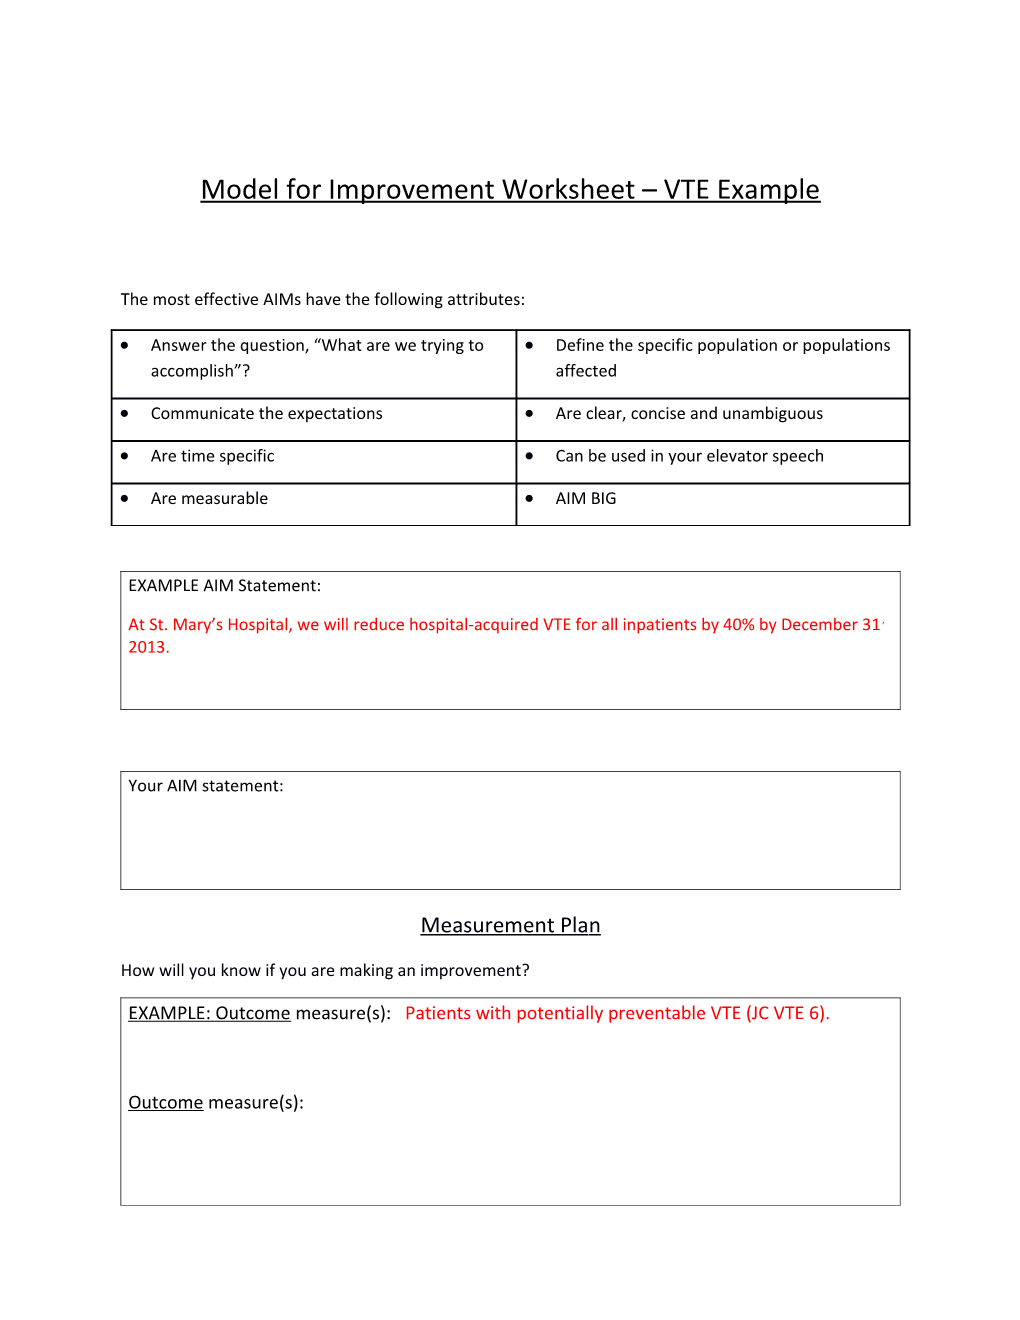 Model for Improvement Worksheet VTE Example